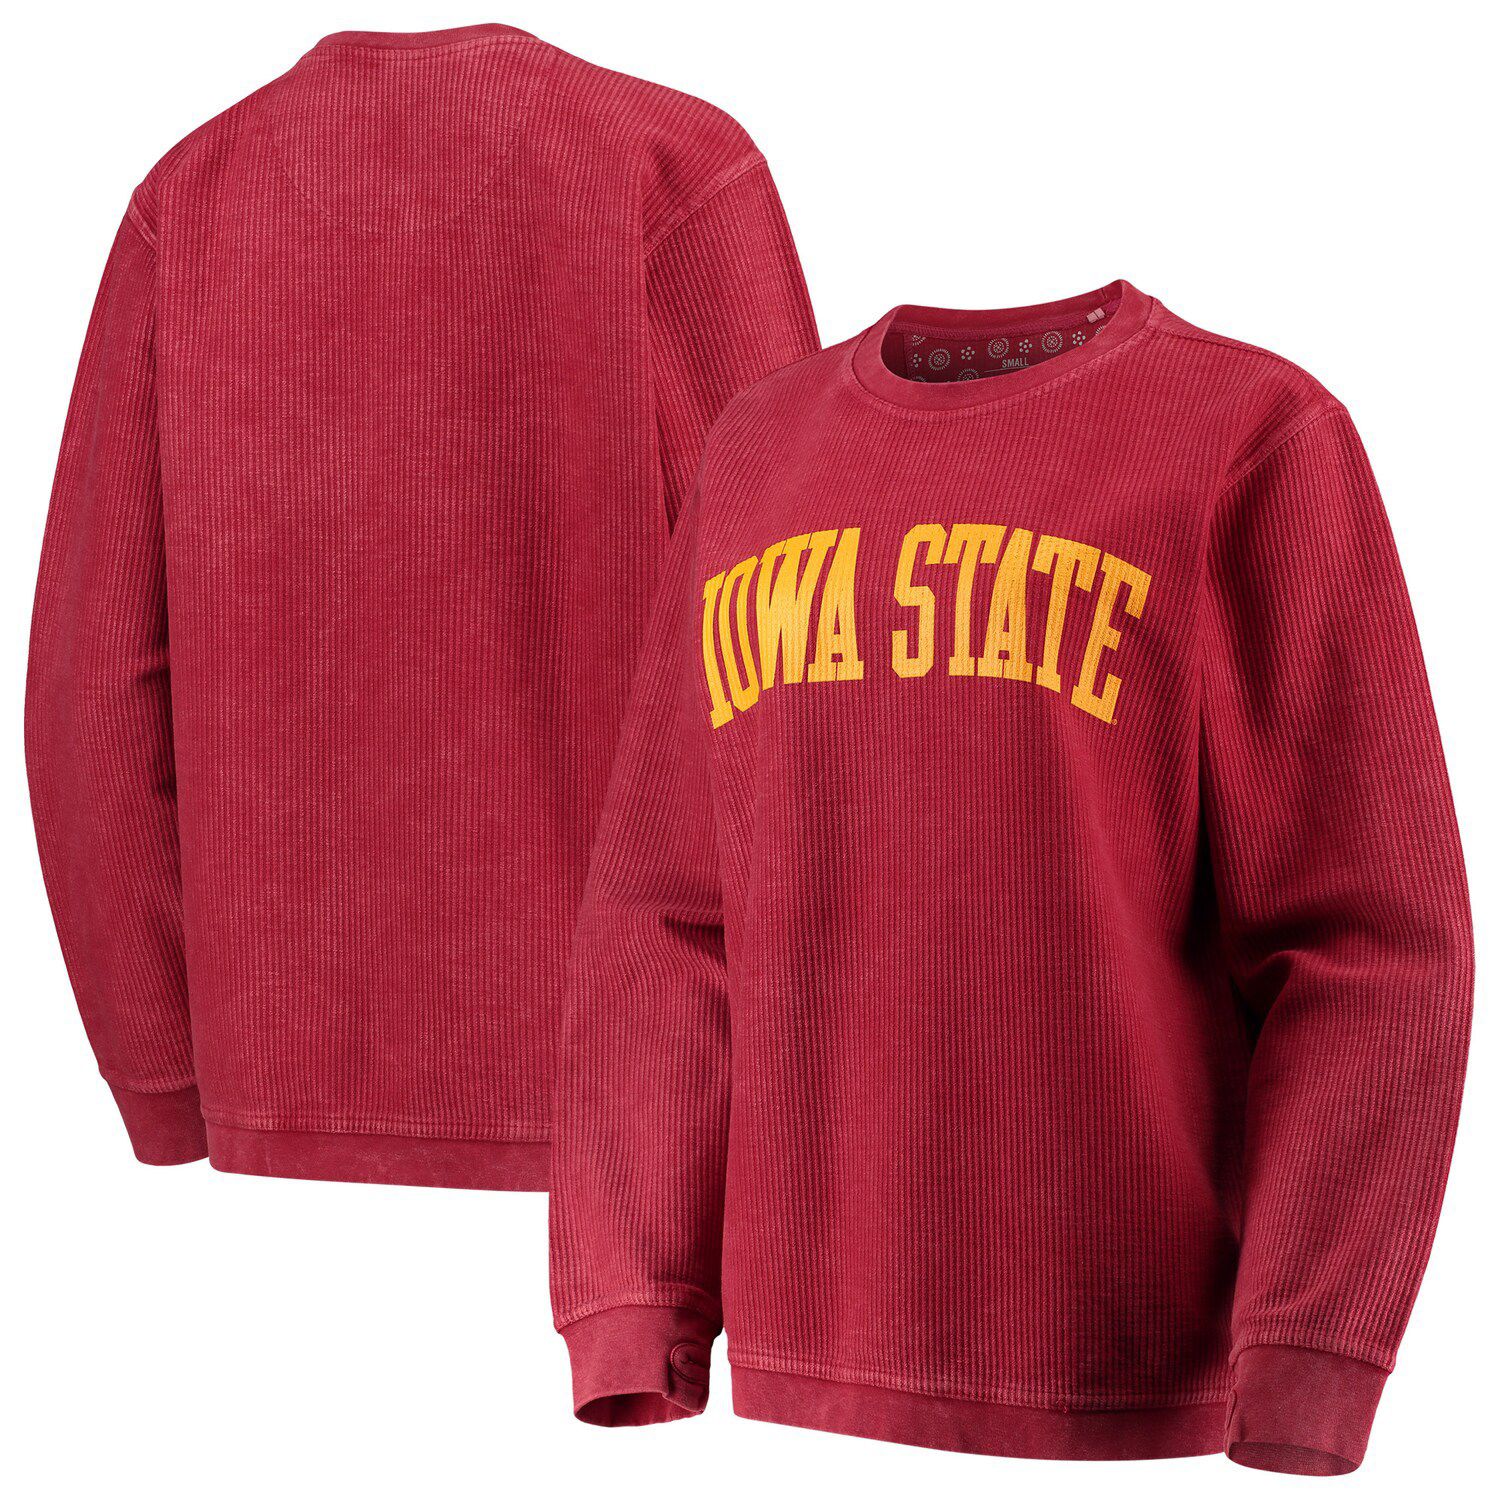 iowa state women's sweatshirt